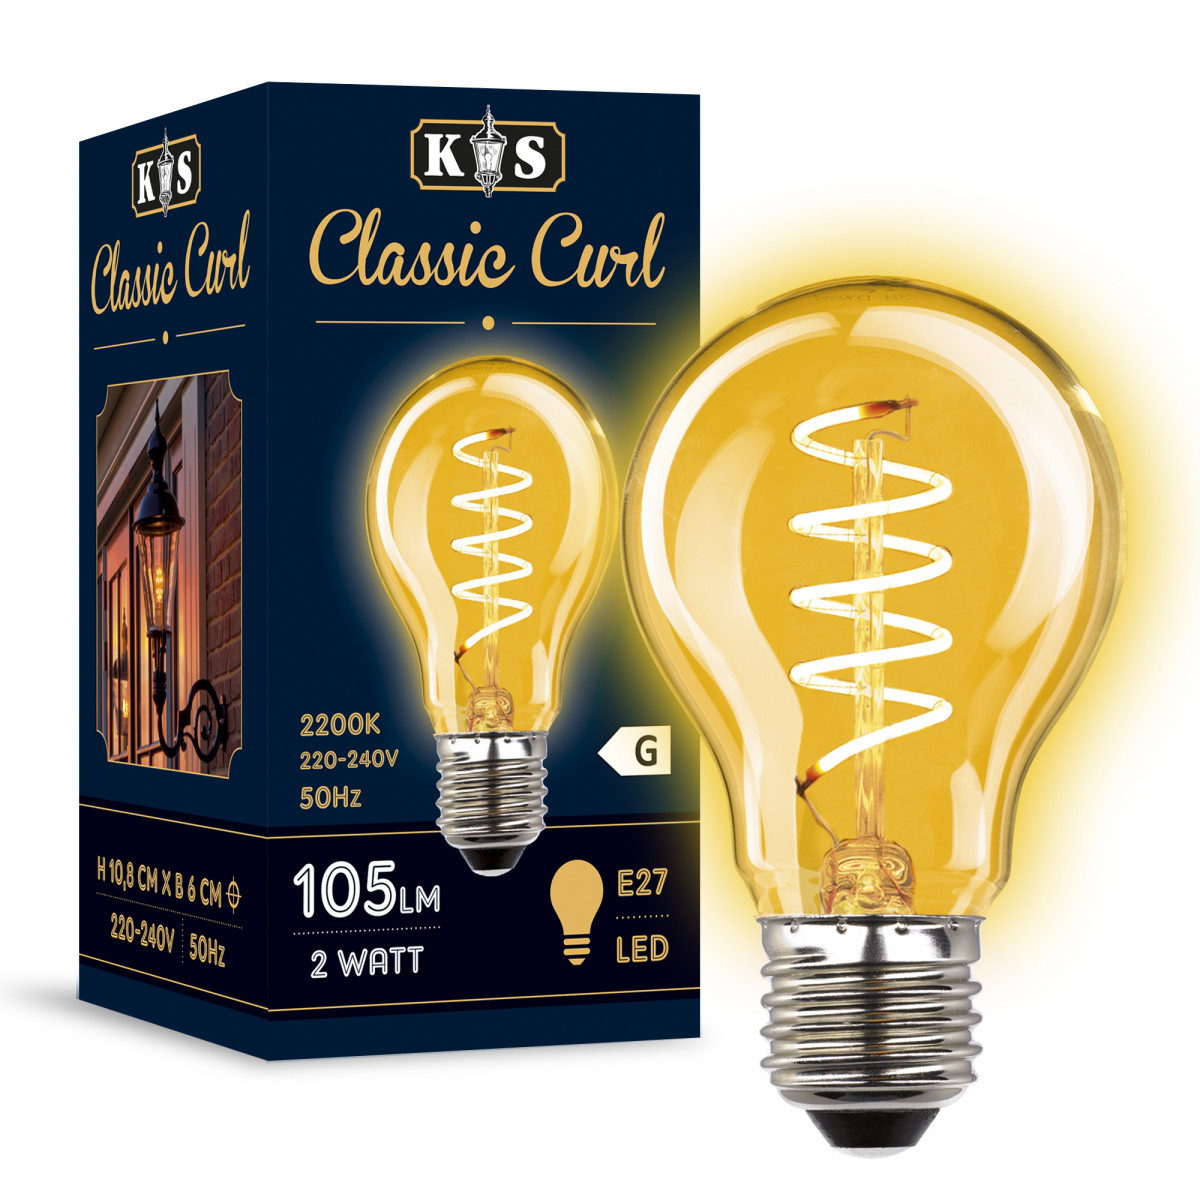 Ampoule Classic Curl (3858) LED 2W- 105 Lumen de KS Lighting